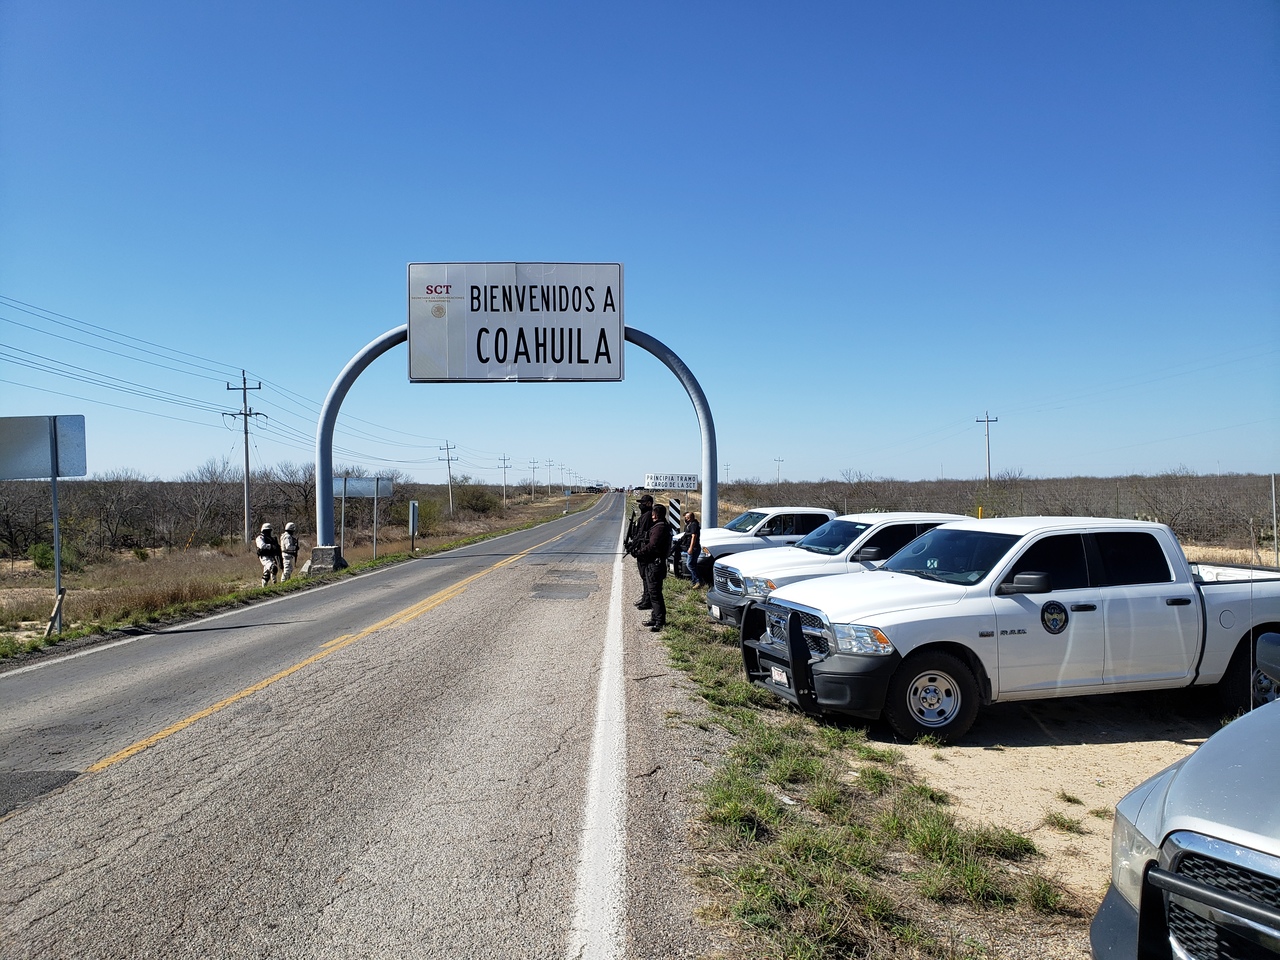 Arcos de inteligencia reforzarán seguridad en Coahuila; serán un complejo